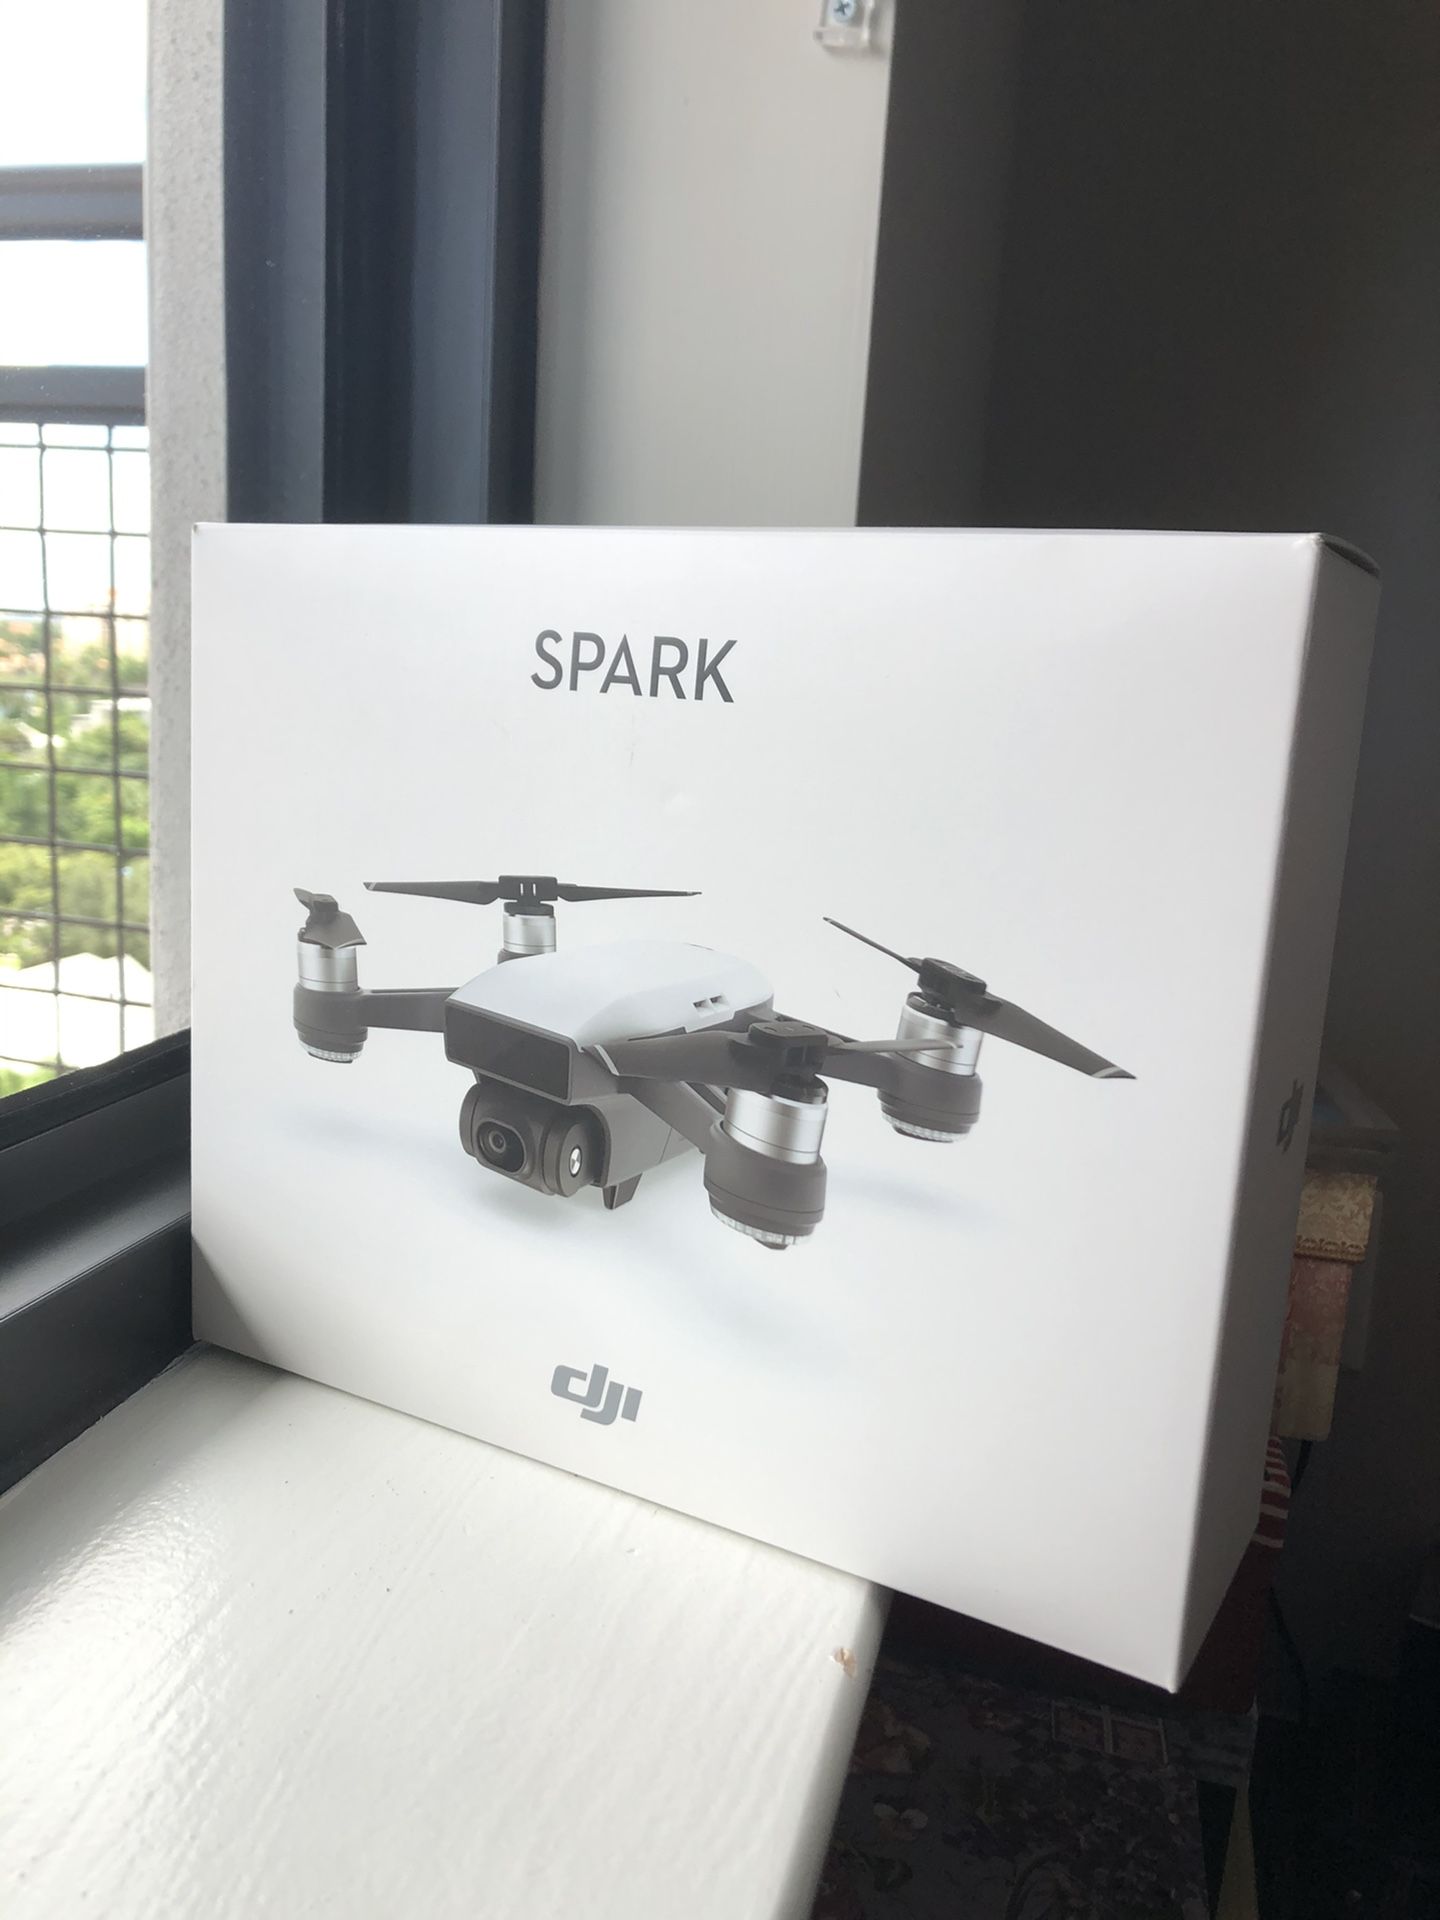 Dji Spark Drone